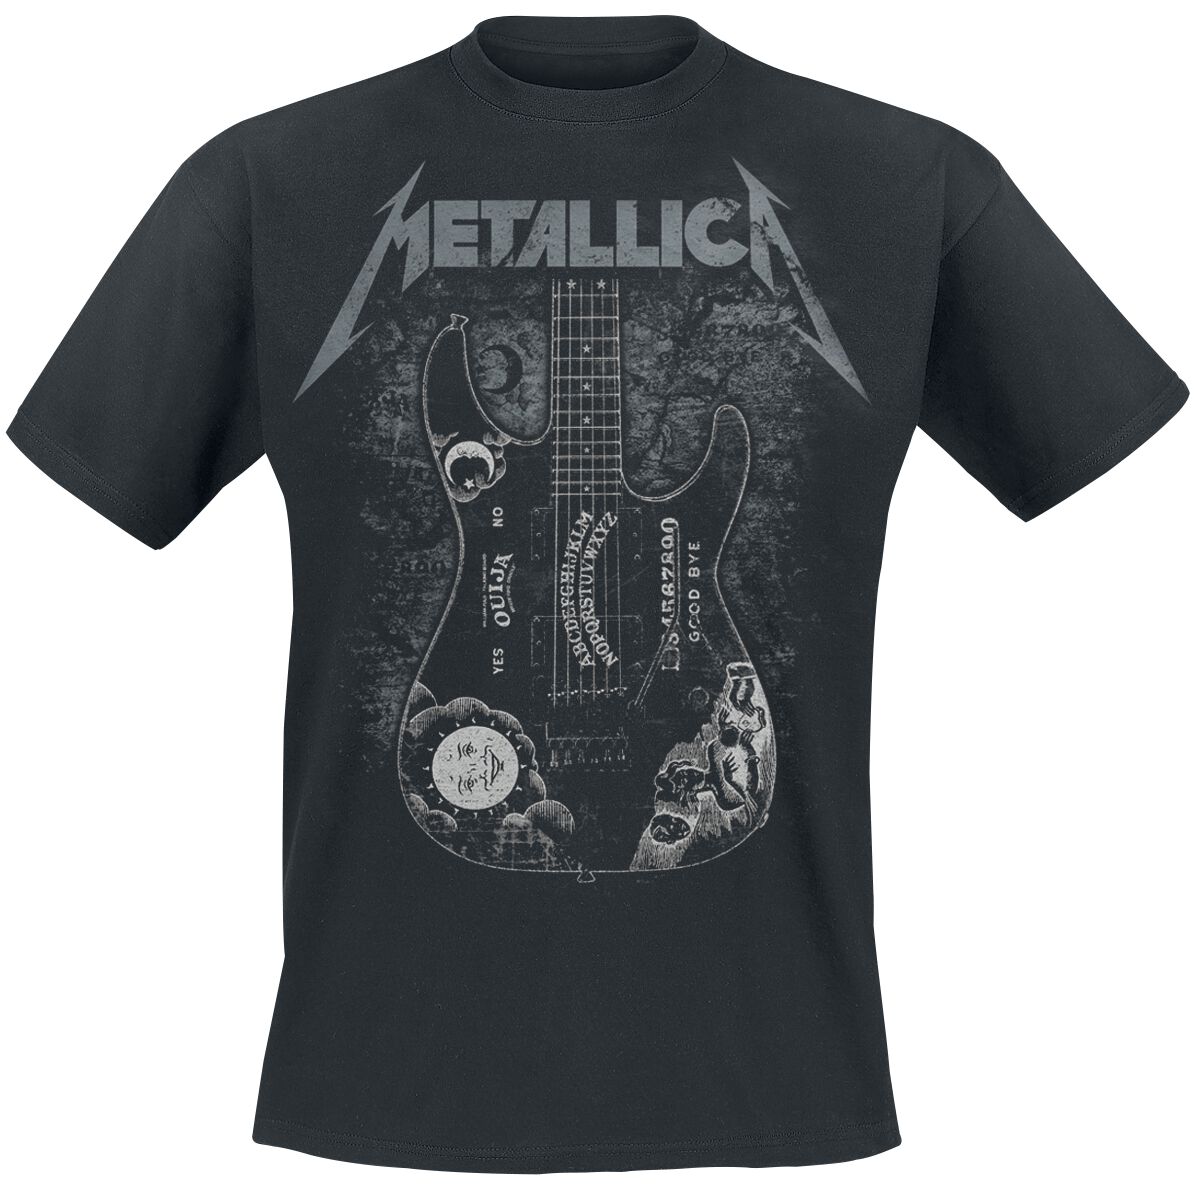 Metallica T-Shirt - Hammett Ouija Guitar - S bis 3XL - für Männer - Größe L - schwarz  - Lizenziertes Merchandise!